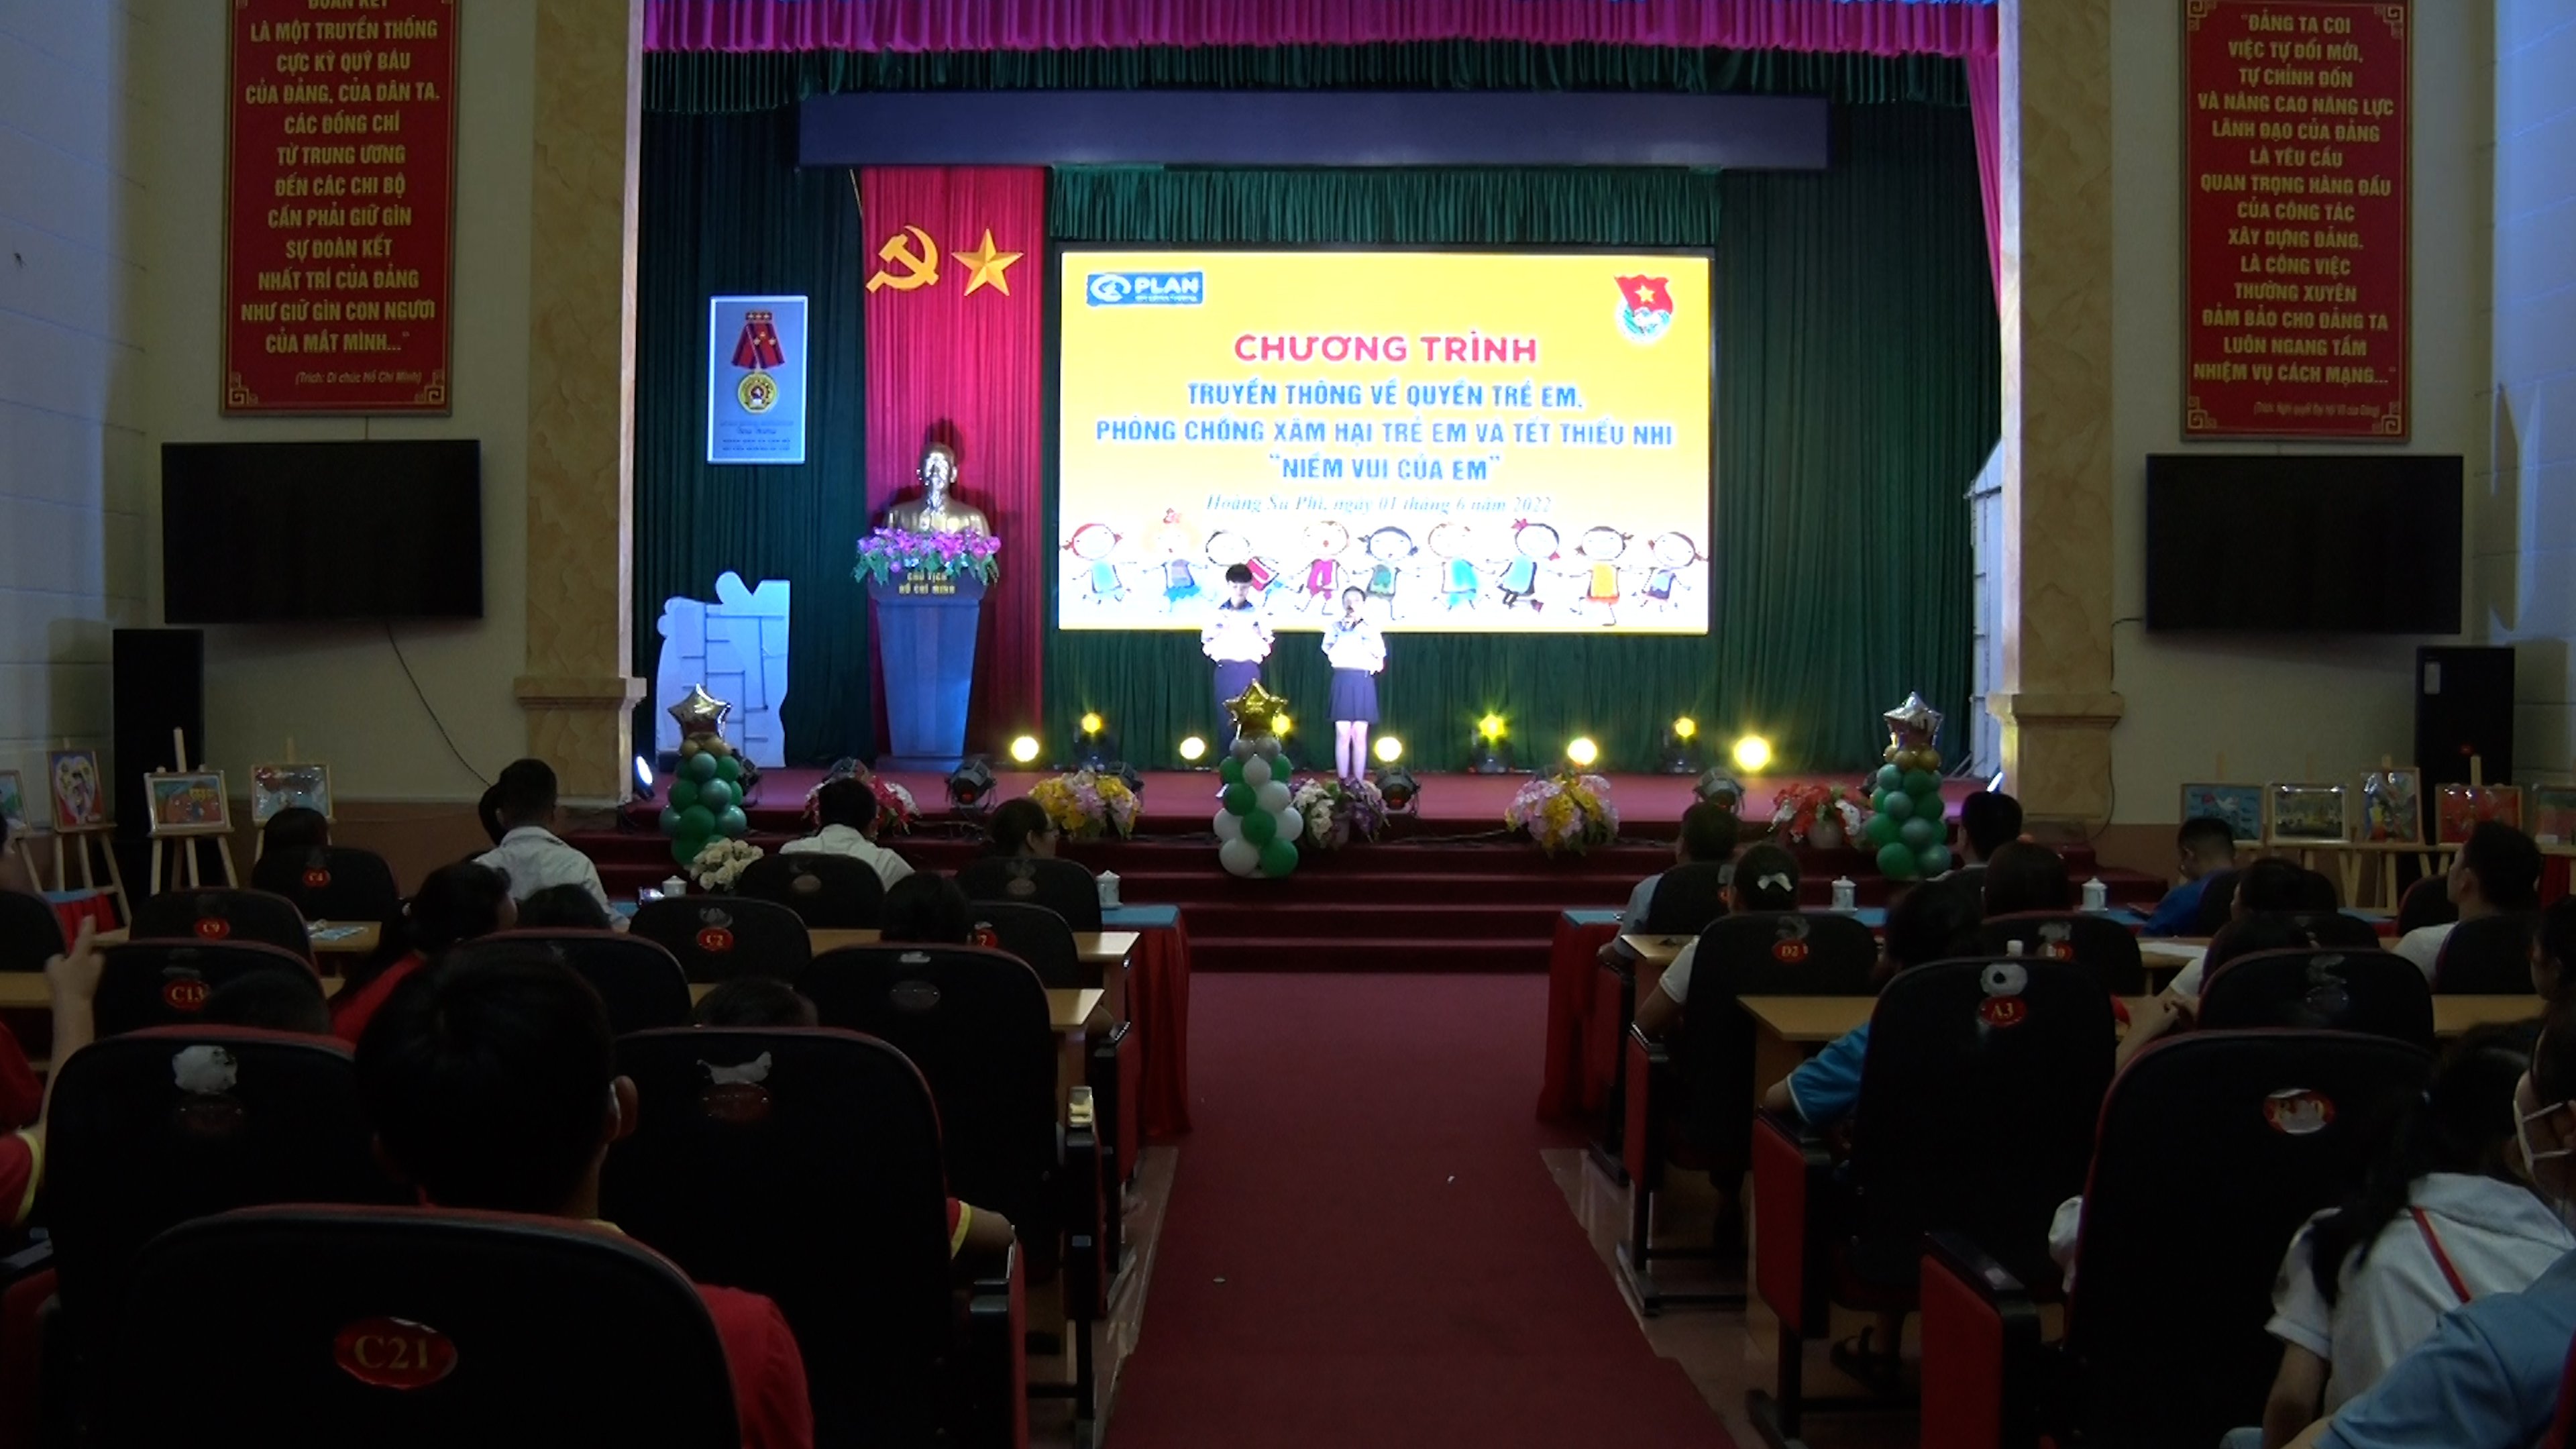 Huyện đoàn huyện Hoàng Su Phì tổ chức Truyền thông về quyền trẻ em; Phòng, chống xâm hại trẻ em và Tết thiếu nhi “ Niềm vui của em”